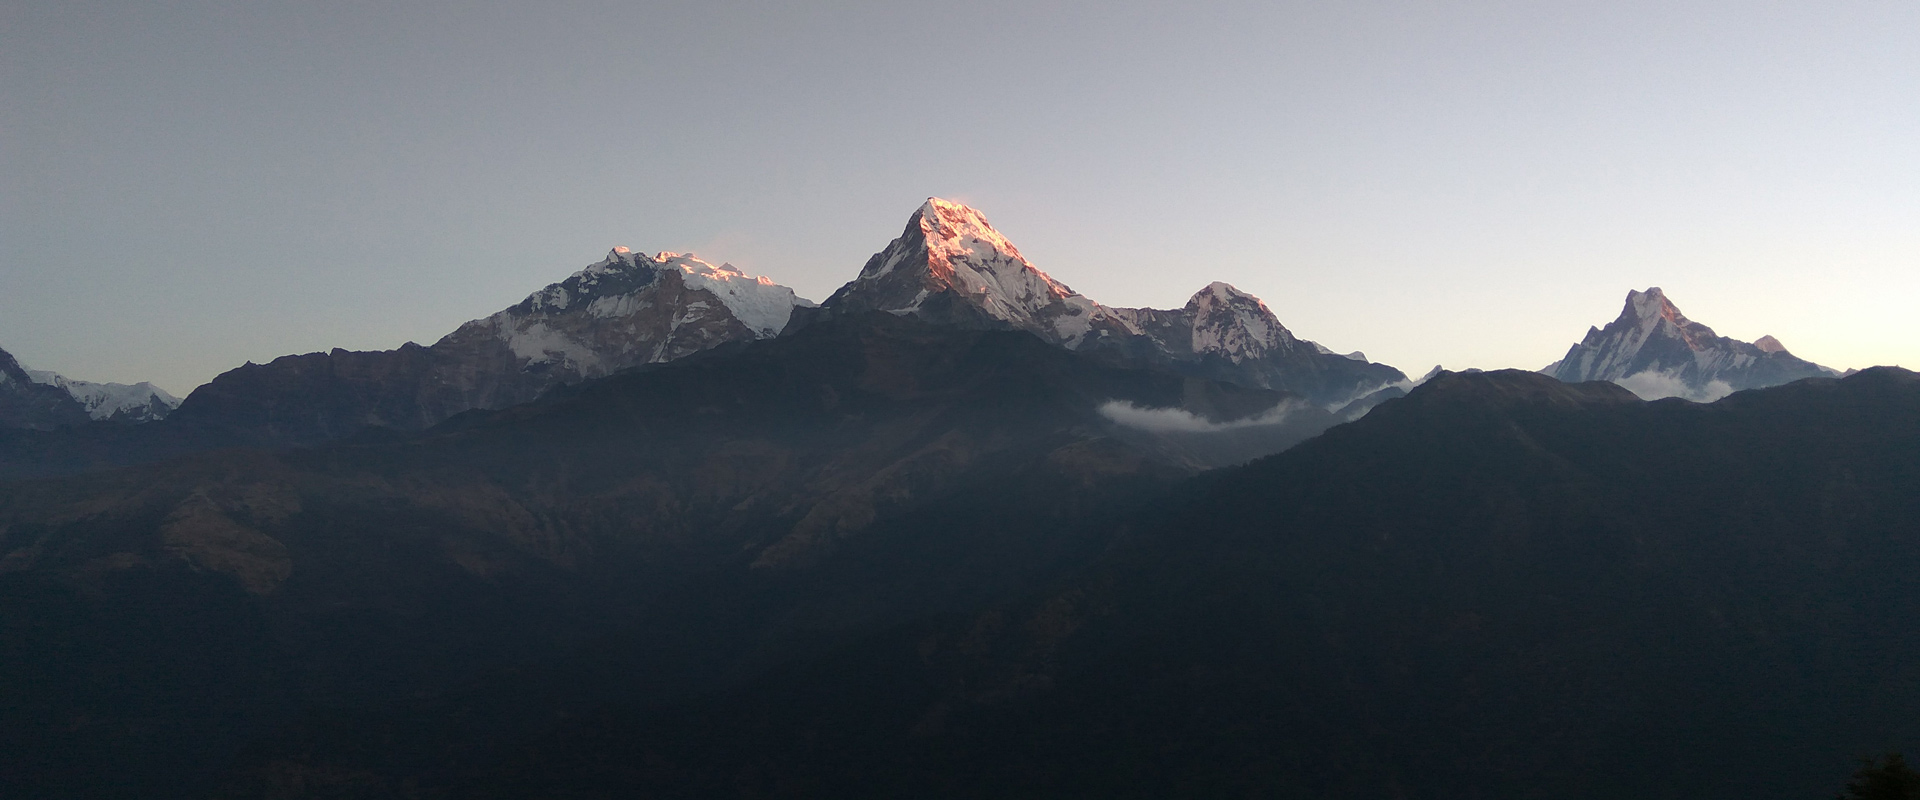 Explore the Annapurna Region